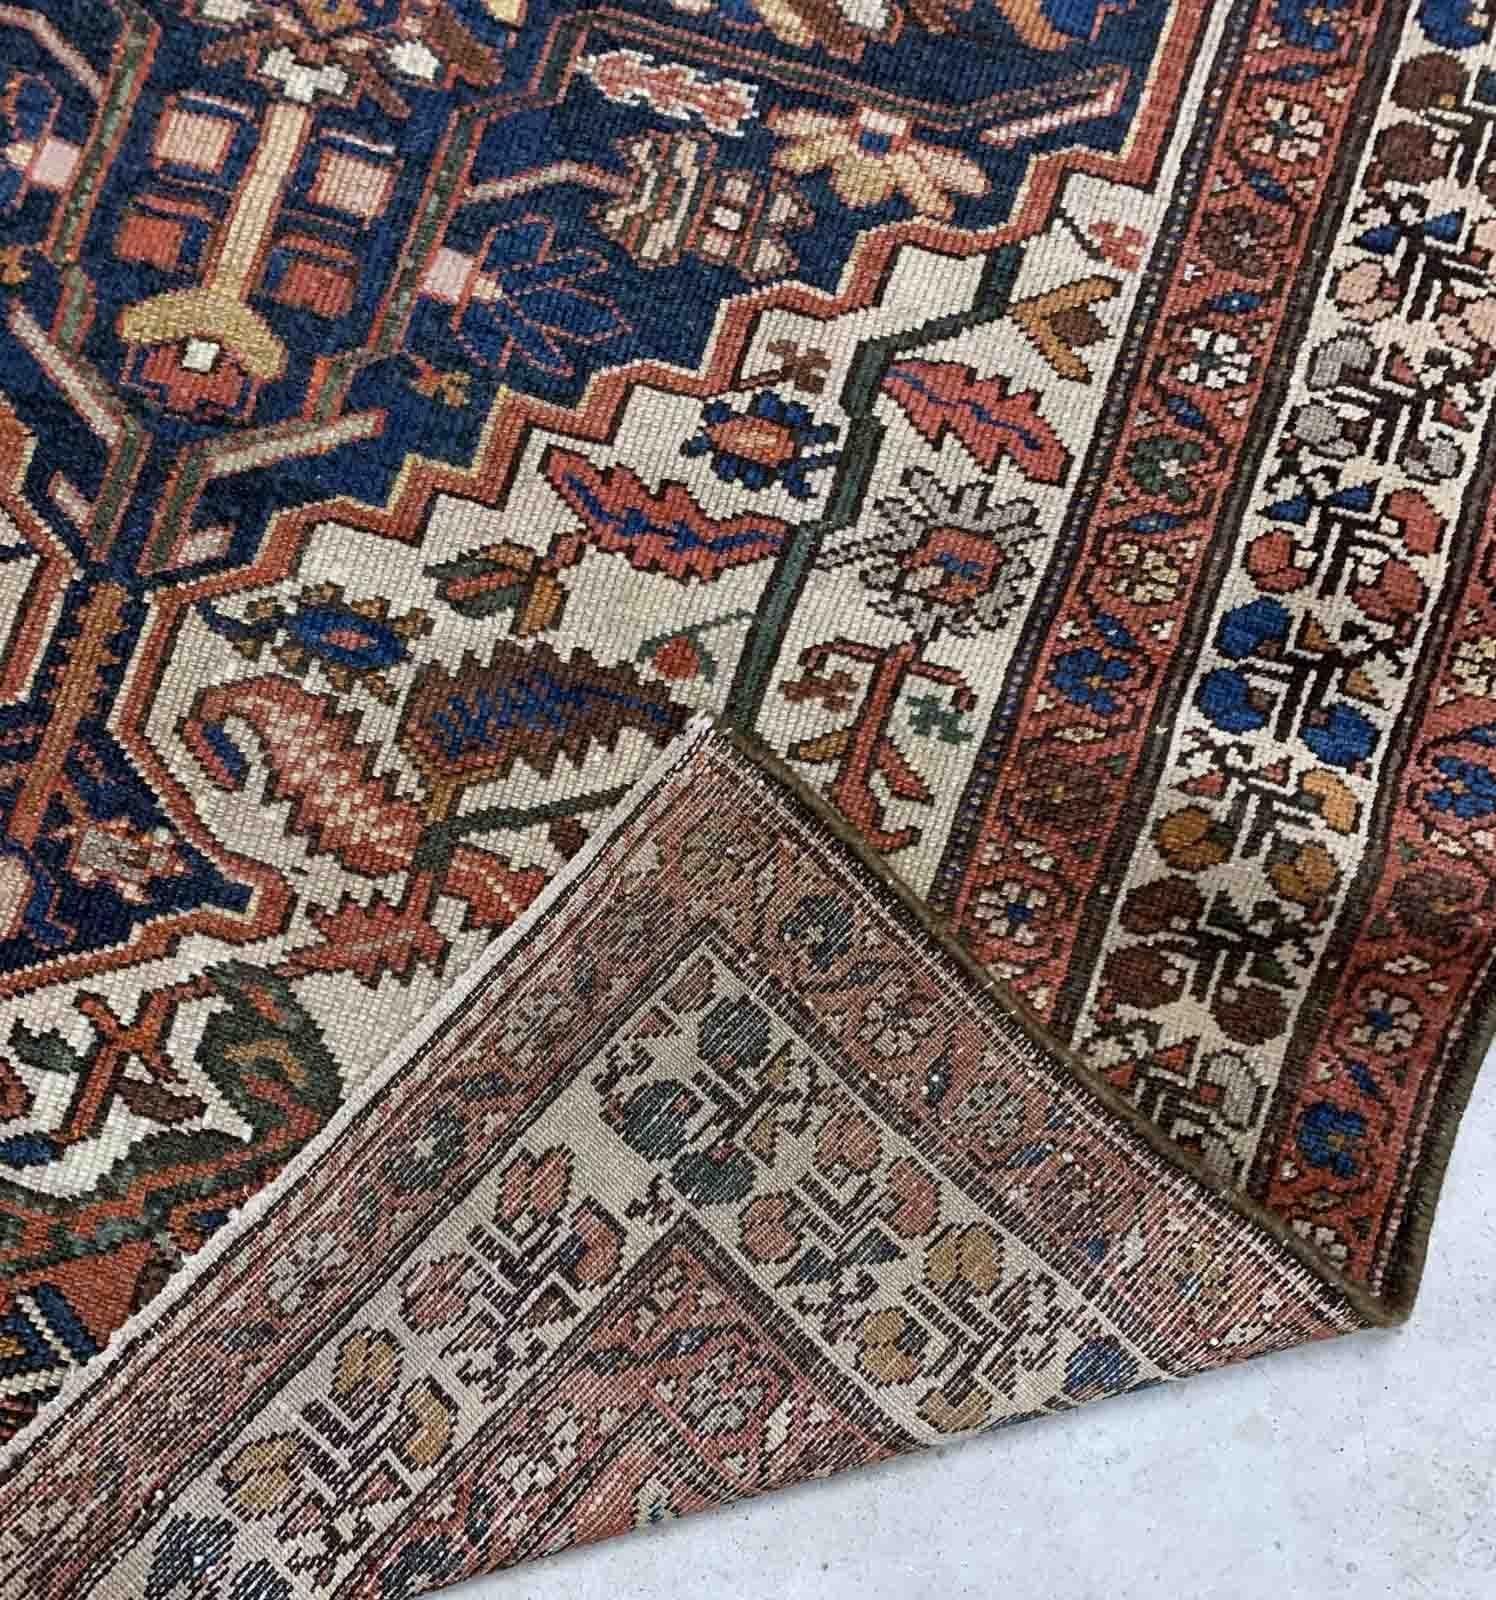 Handgefertigter antiker Malayer-Teppich aus dem Nahen Osten in traditionellem Design. Der Teppich stammt vom Anfang des 20. Jahrhunderts und ist in gutem Originalzustand.

-zustand: original gut,

-um: 1920er Jahre,

-größe: 4,1' x 6,2' (125cm